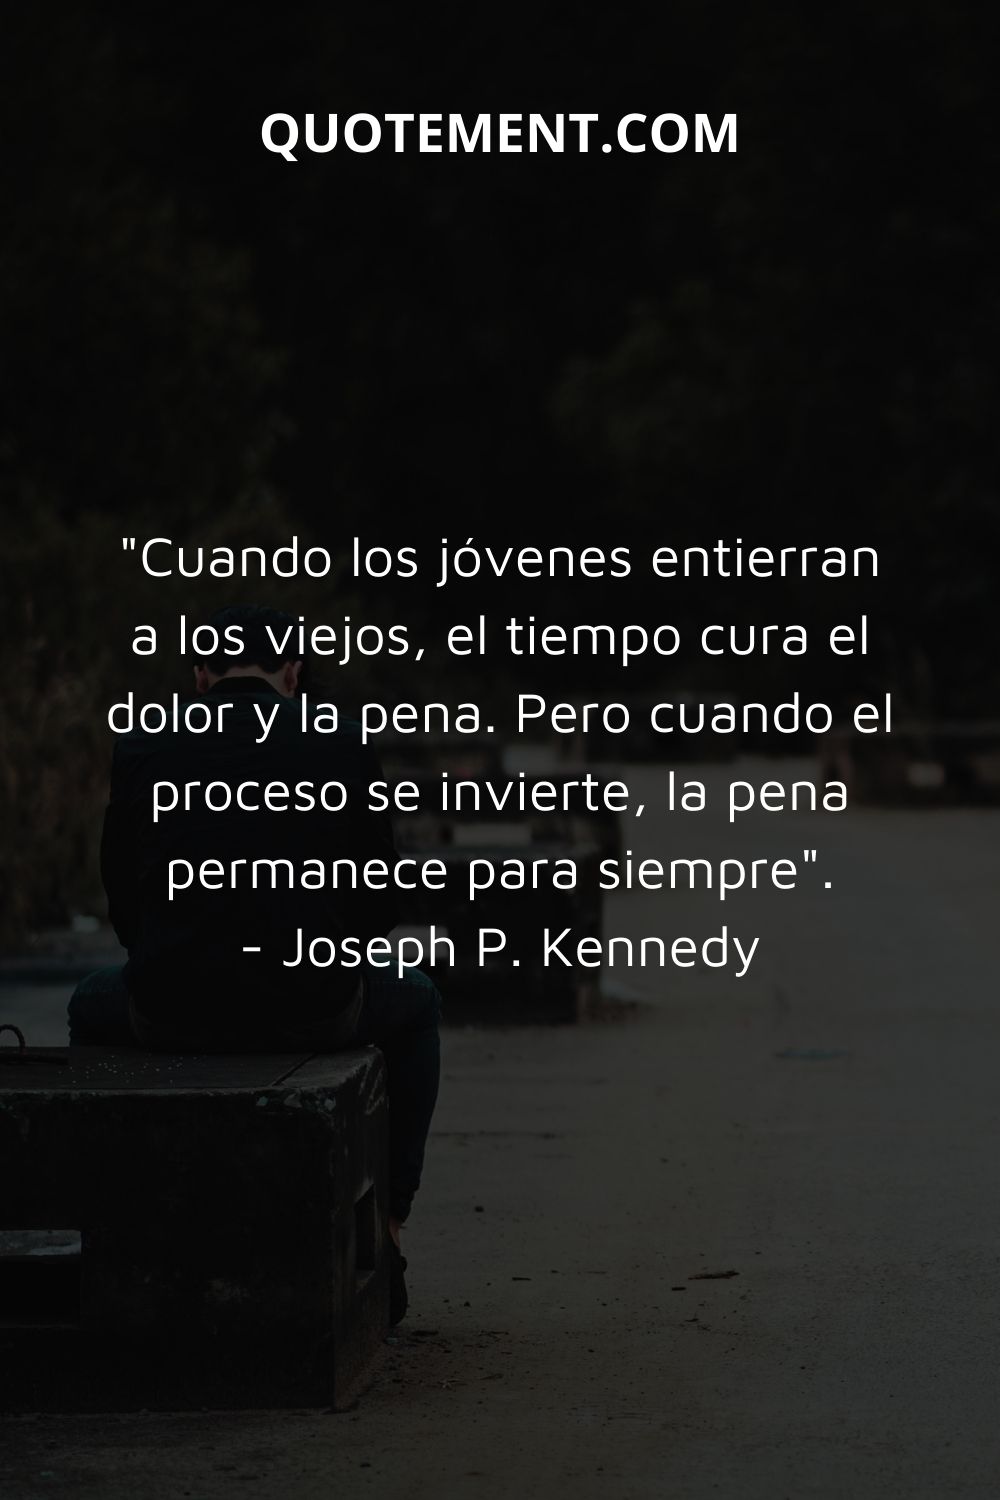 "Cuando los jóvenes entierran a los viejos, el tiempo cura el dolor y la pena. Pero cuando el proceso se invierte, la pena permanece para siempre". - Joseph P. Kennedy